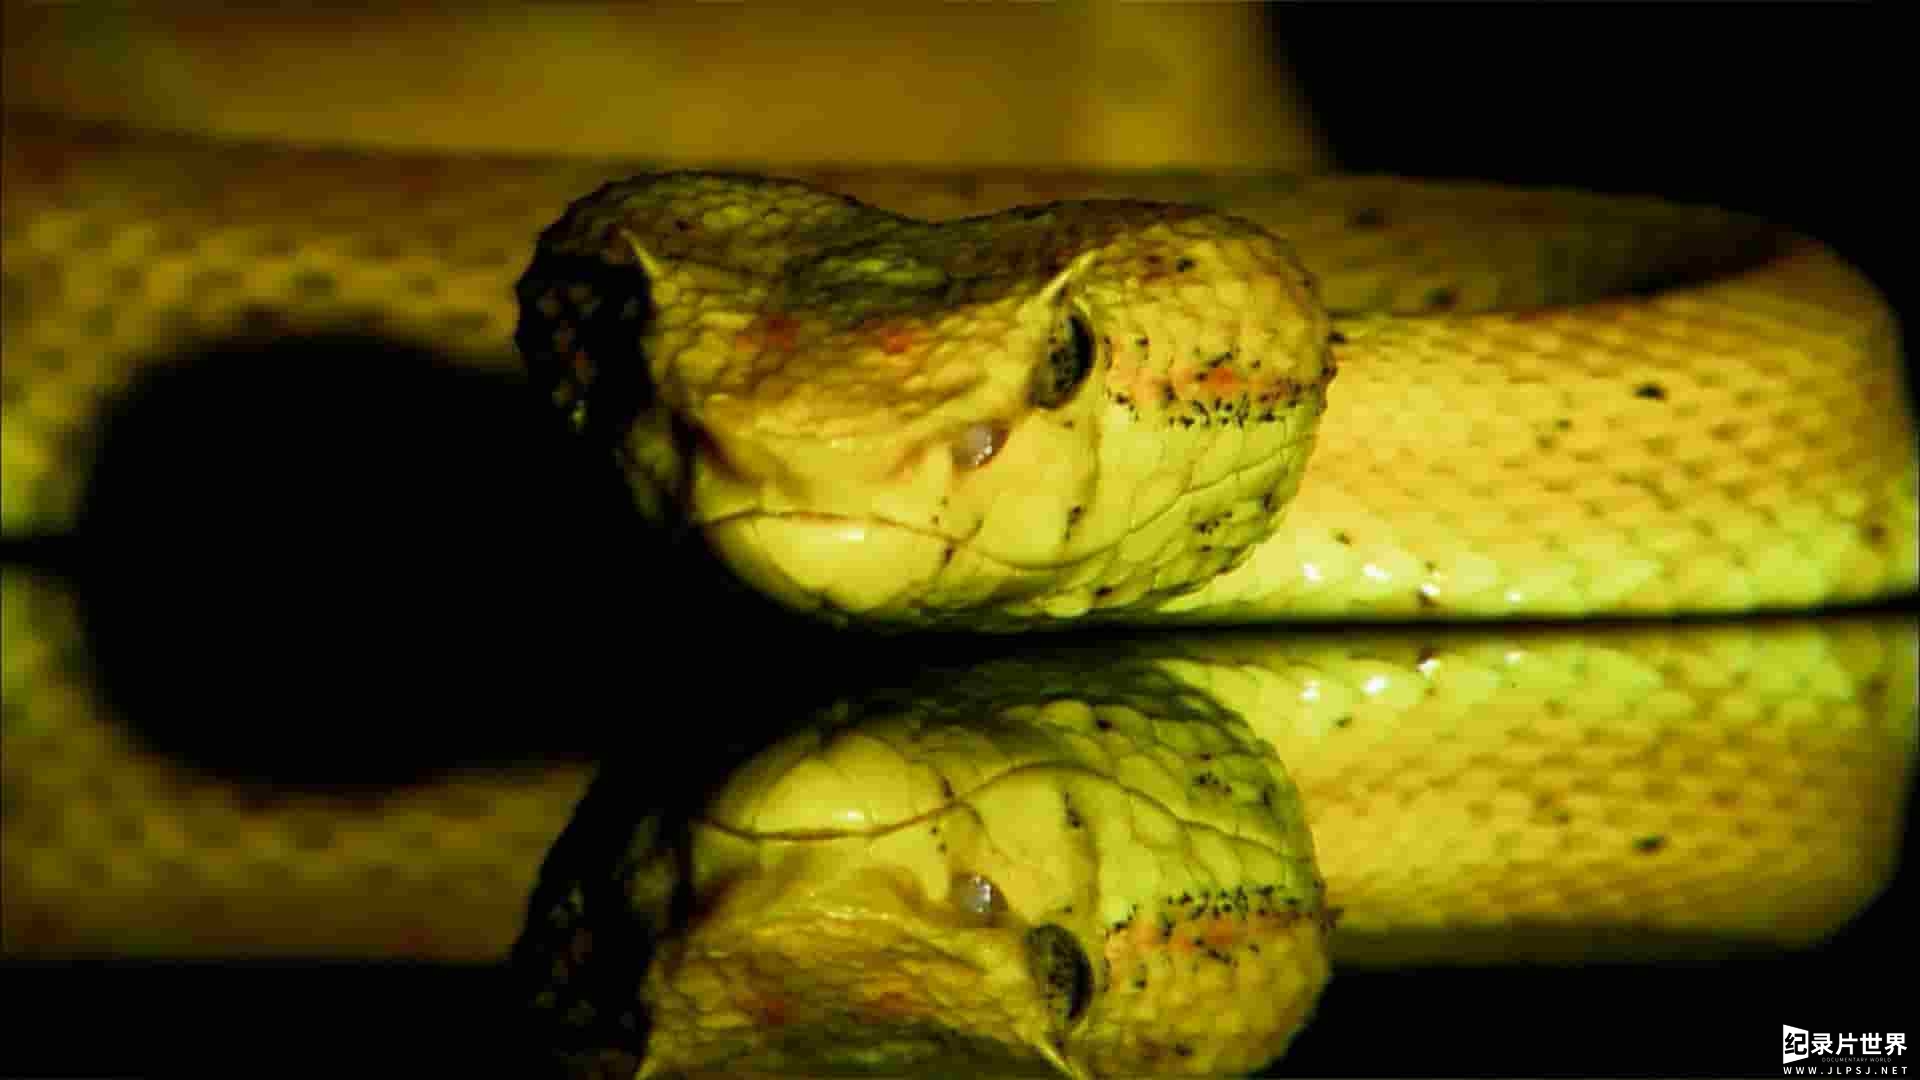 动物星球纪录片《蛇之惊艳奇观 The Beauty of Snakes》全1集